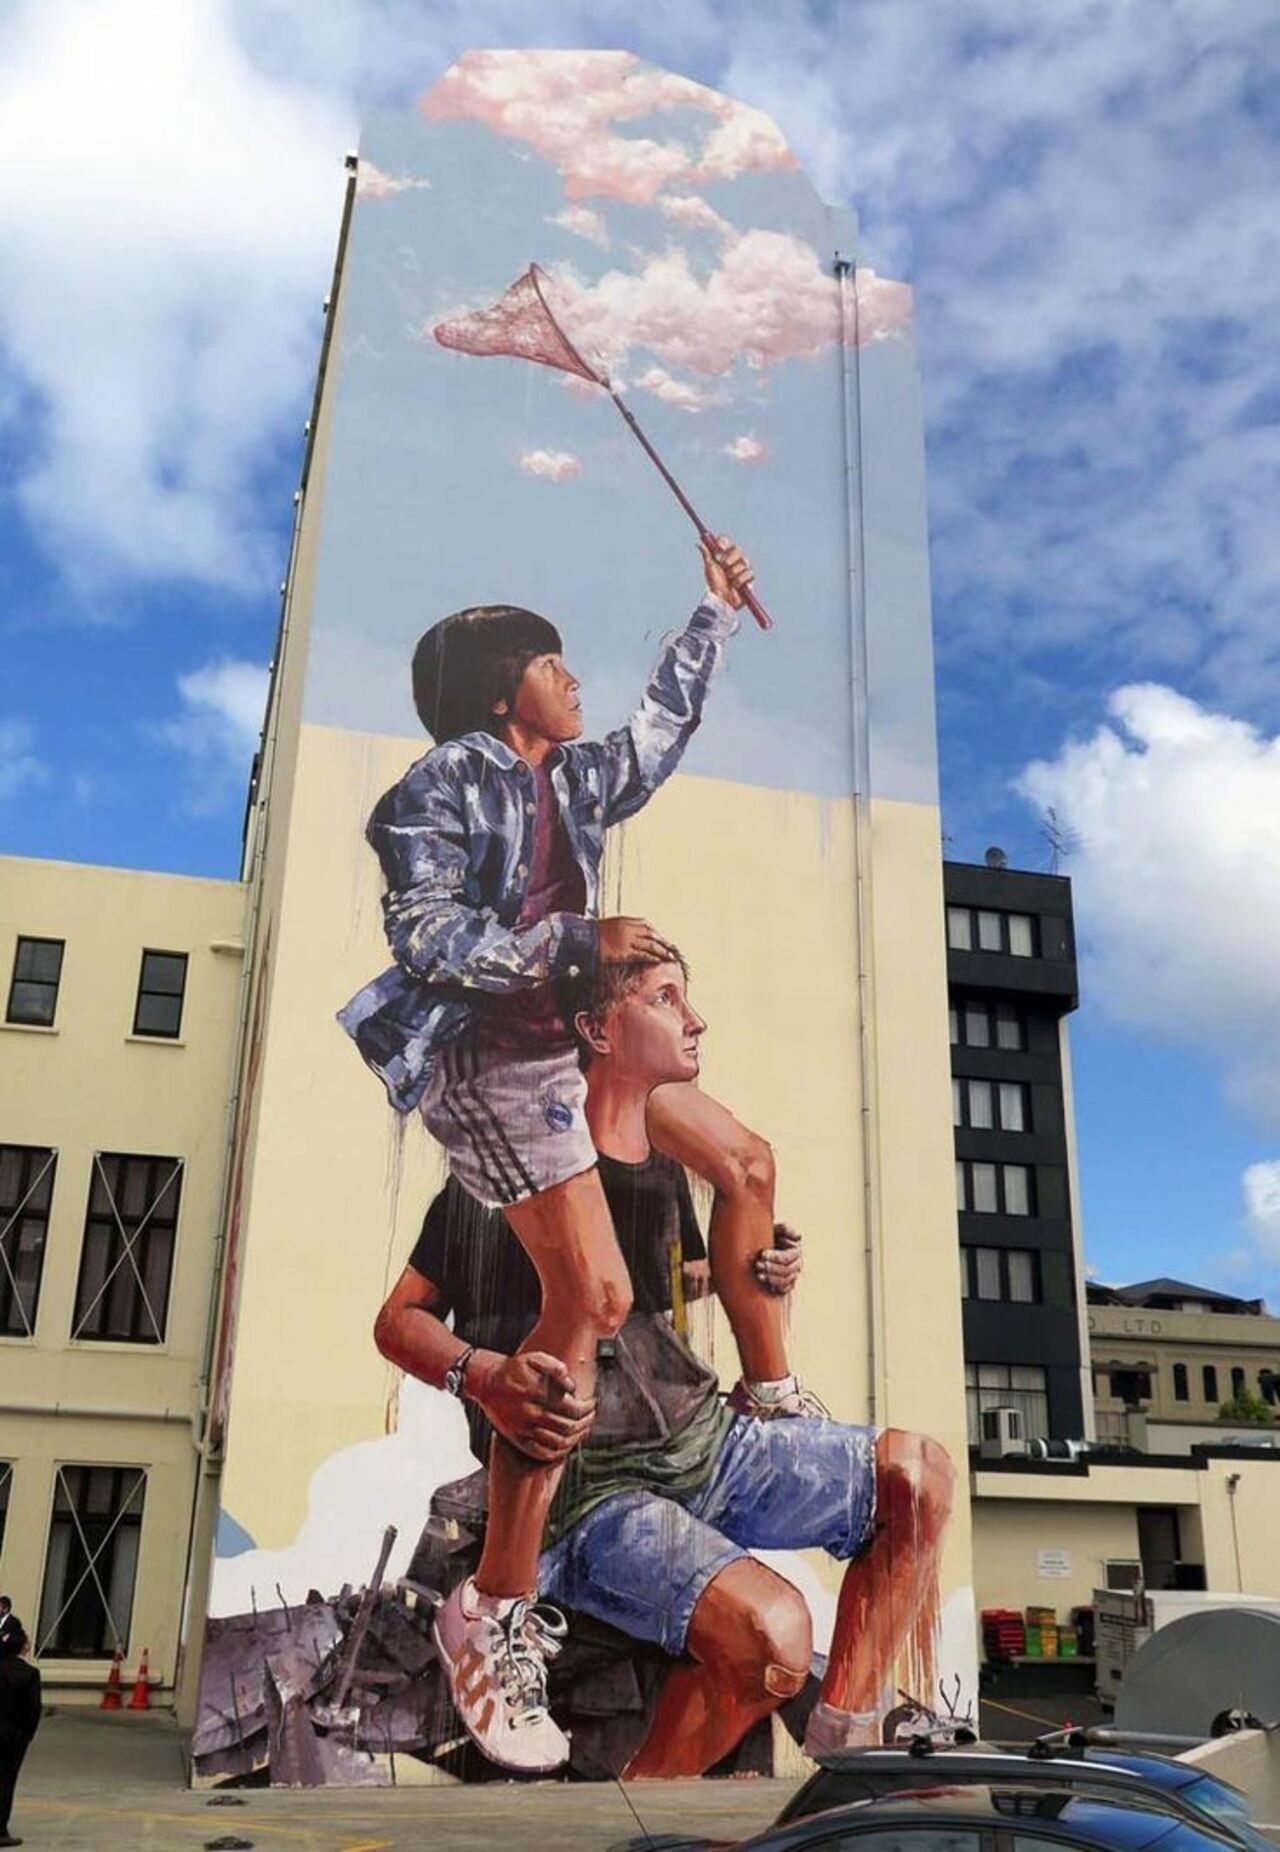 Fintan Magee#streetart #mural #graffiti #art https://t.co/g2NOIpJJQ2